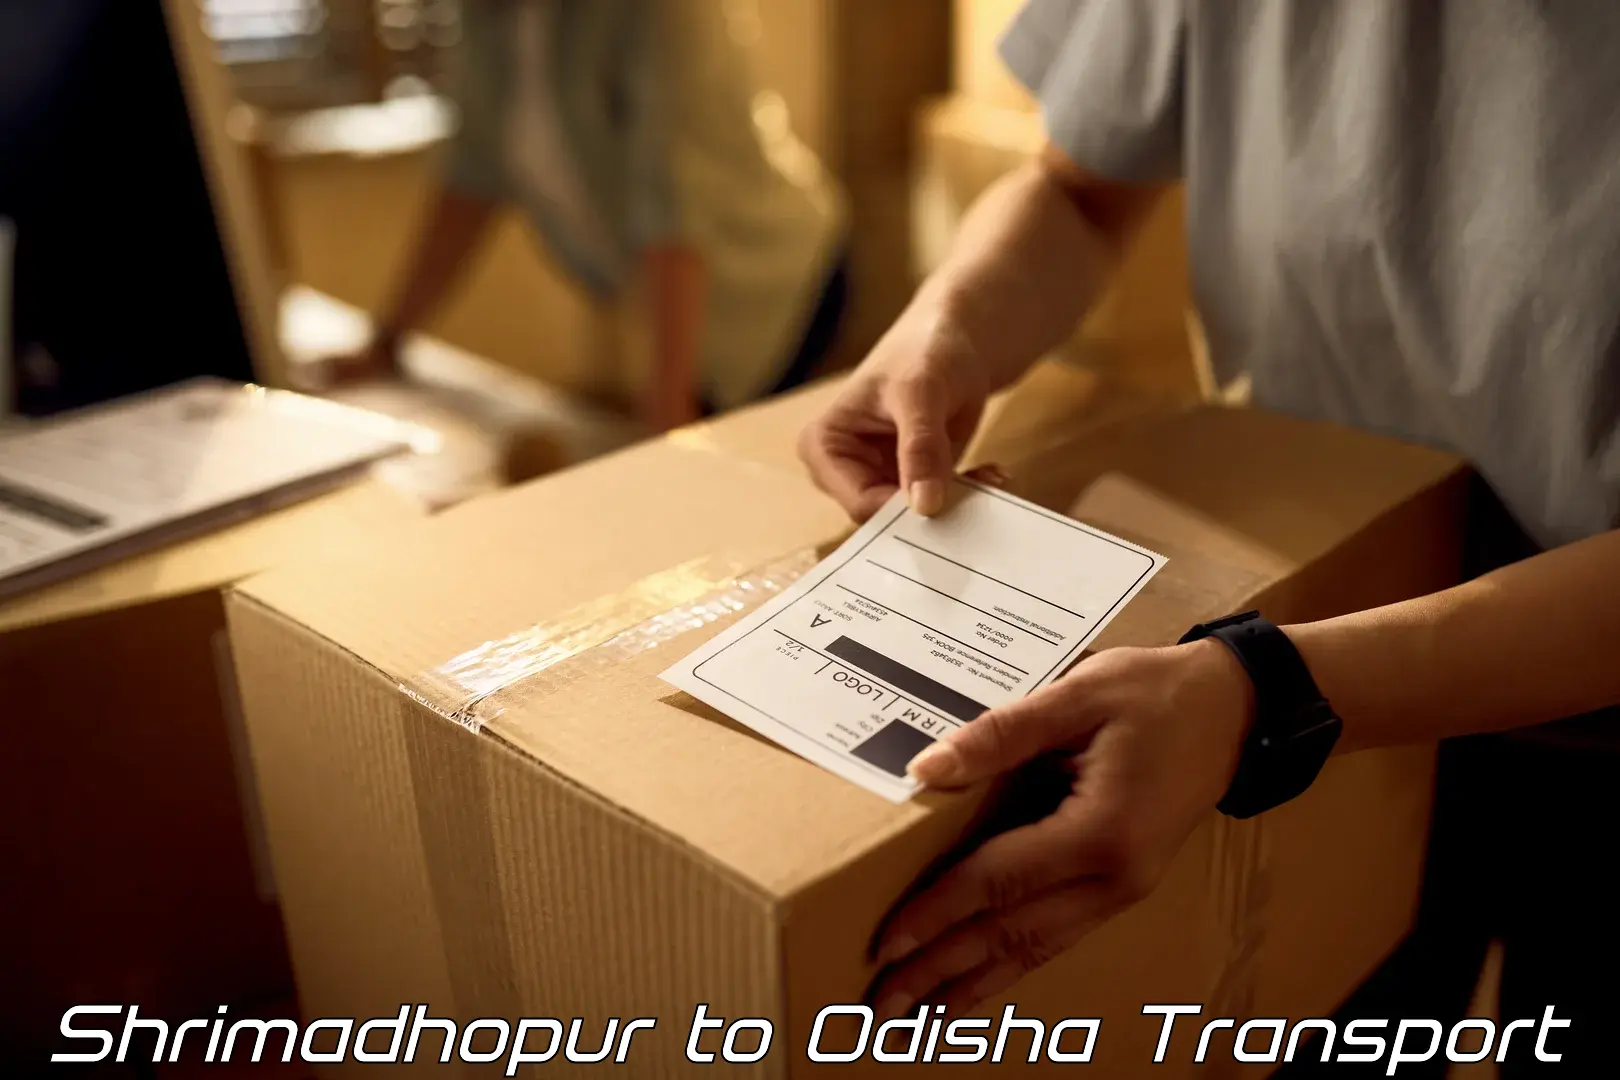 Cargo transport services Shrimadhopur to Khaprakhol